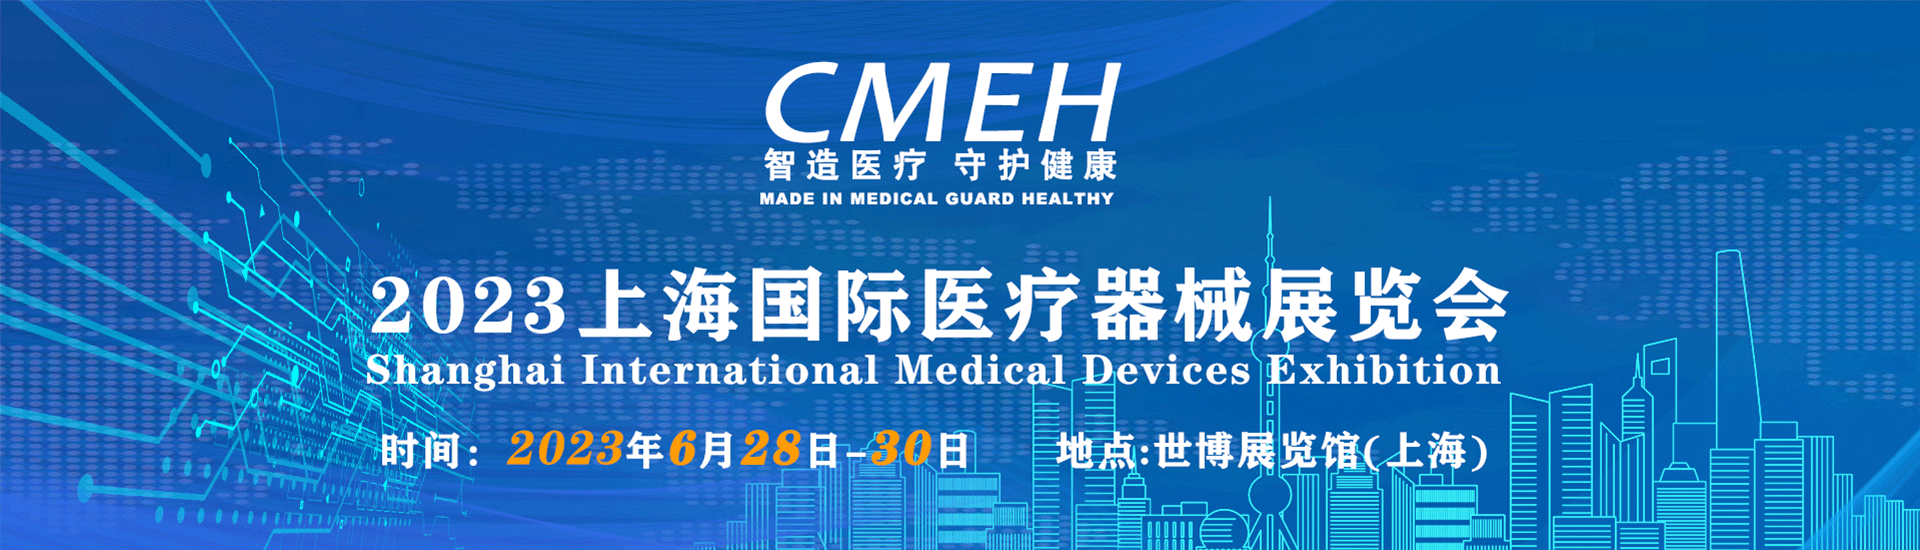 上海医疗器械展会-医疗展览会-医疗器械博览会